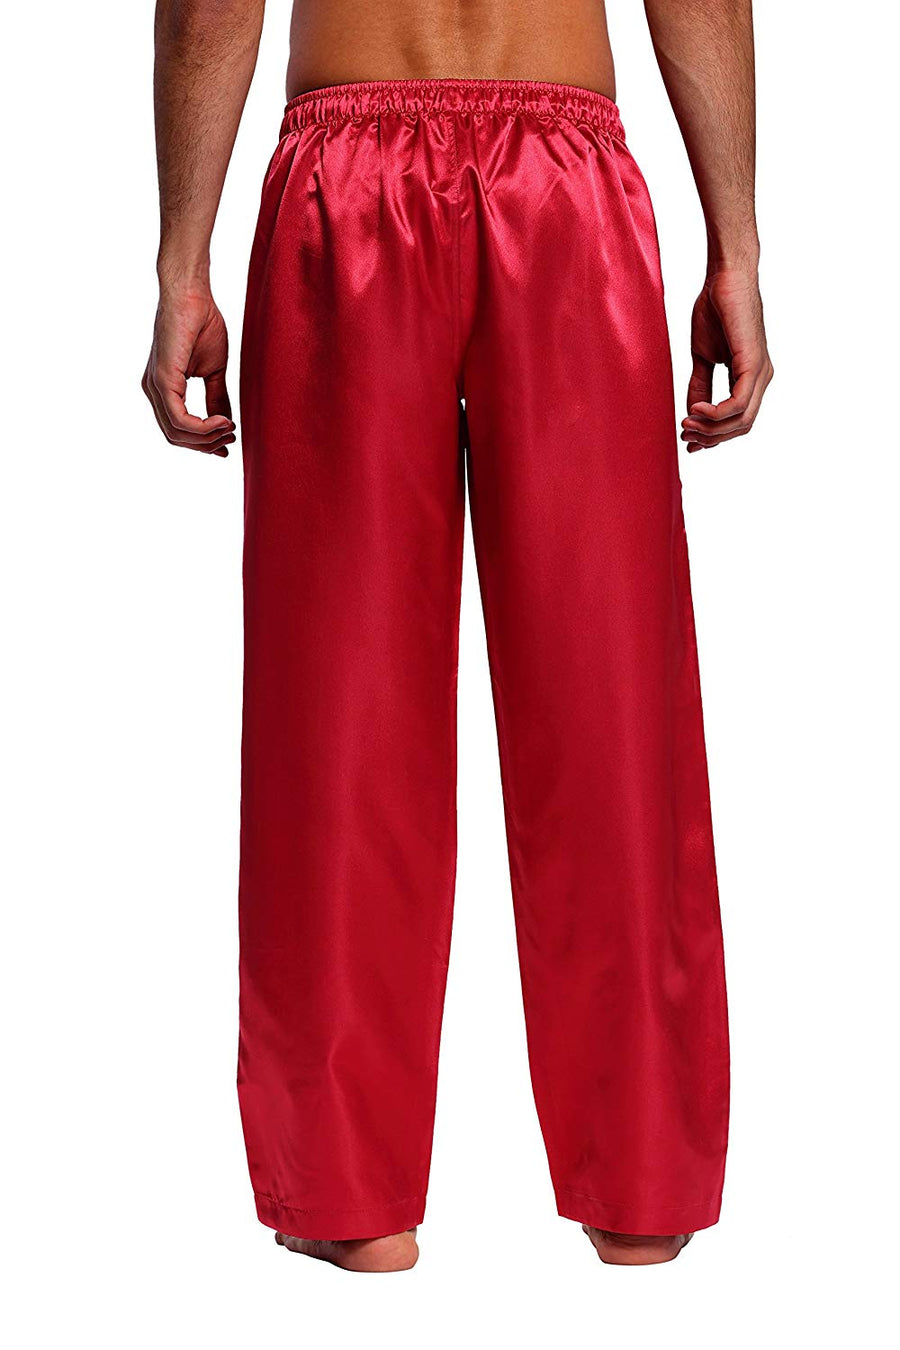 CYZ Men's Satin Pajama Pants